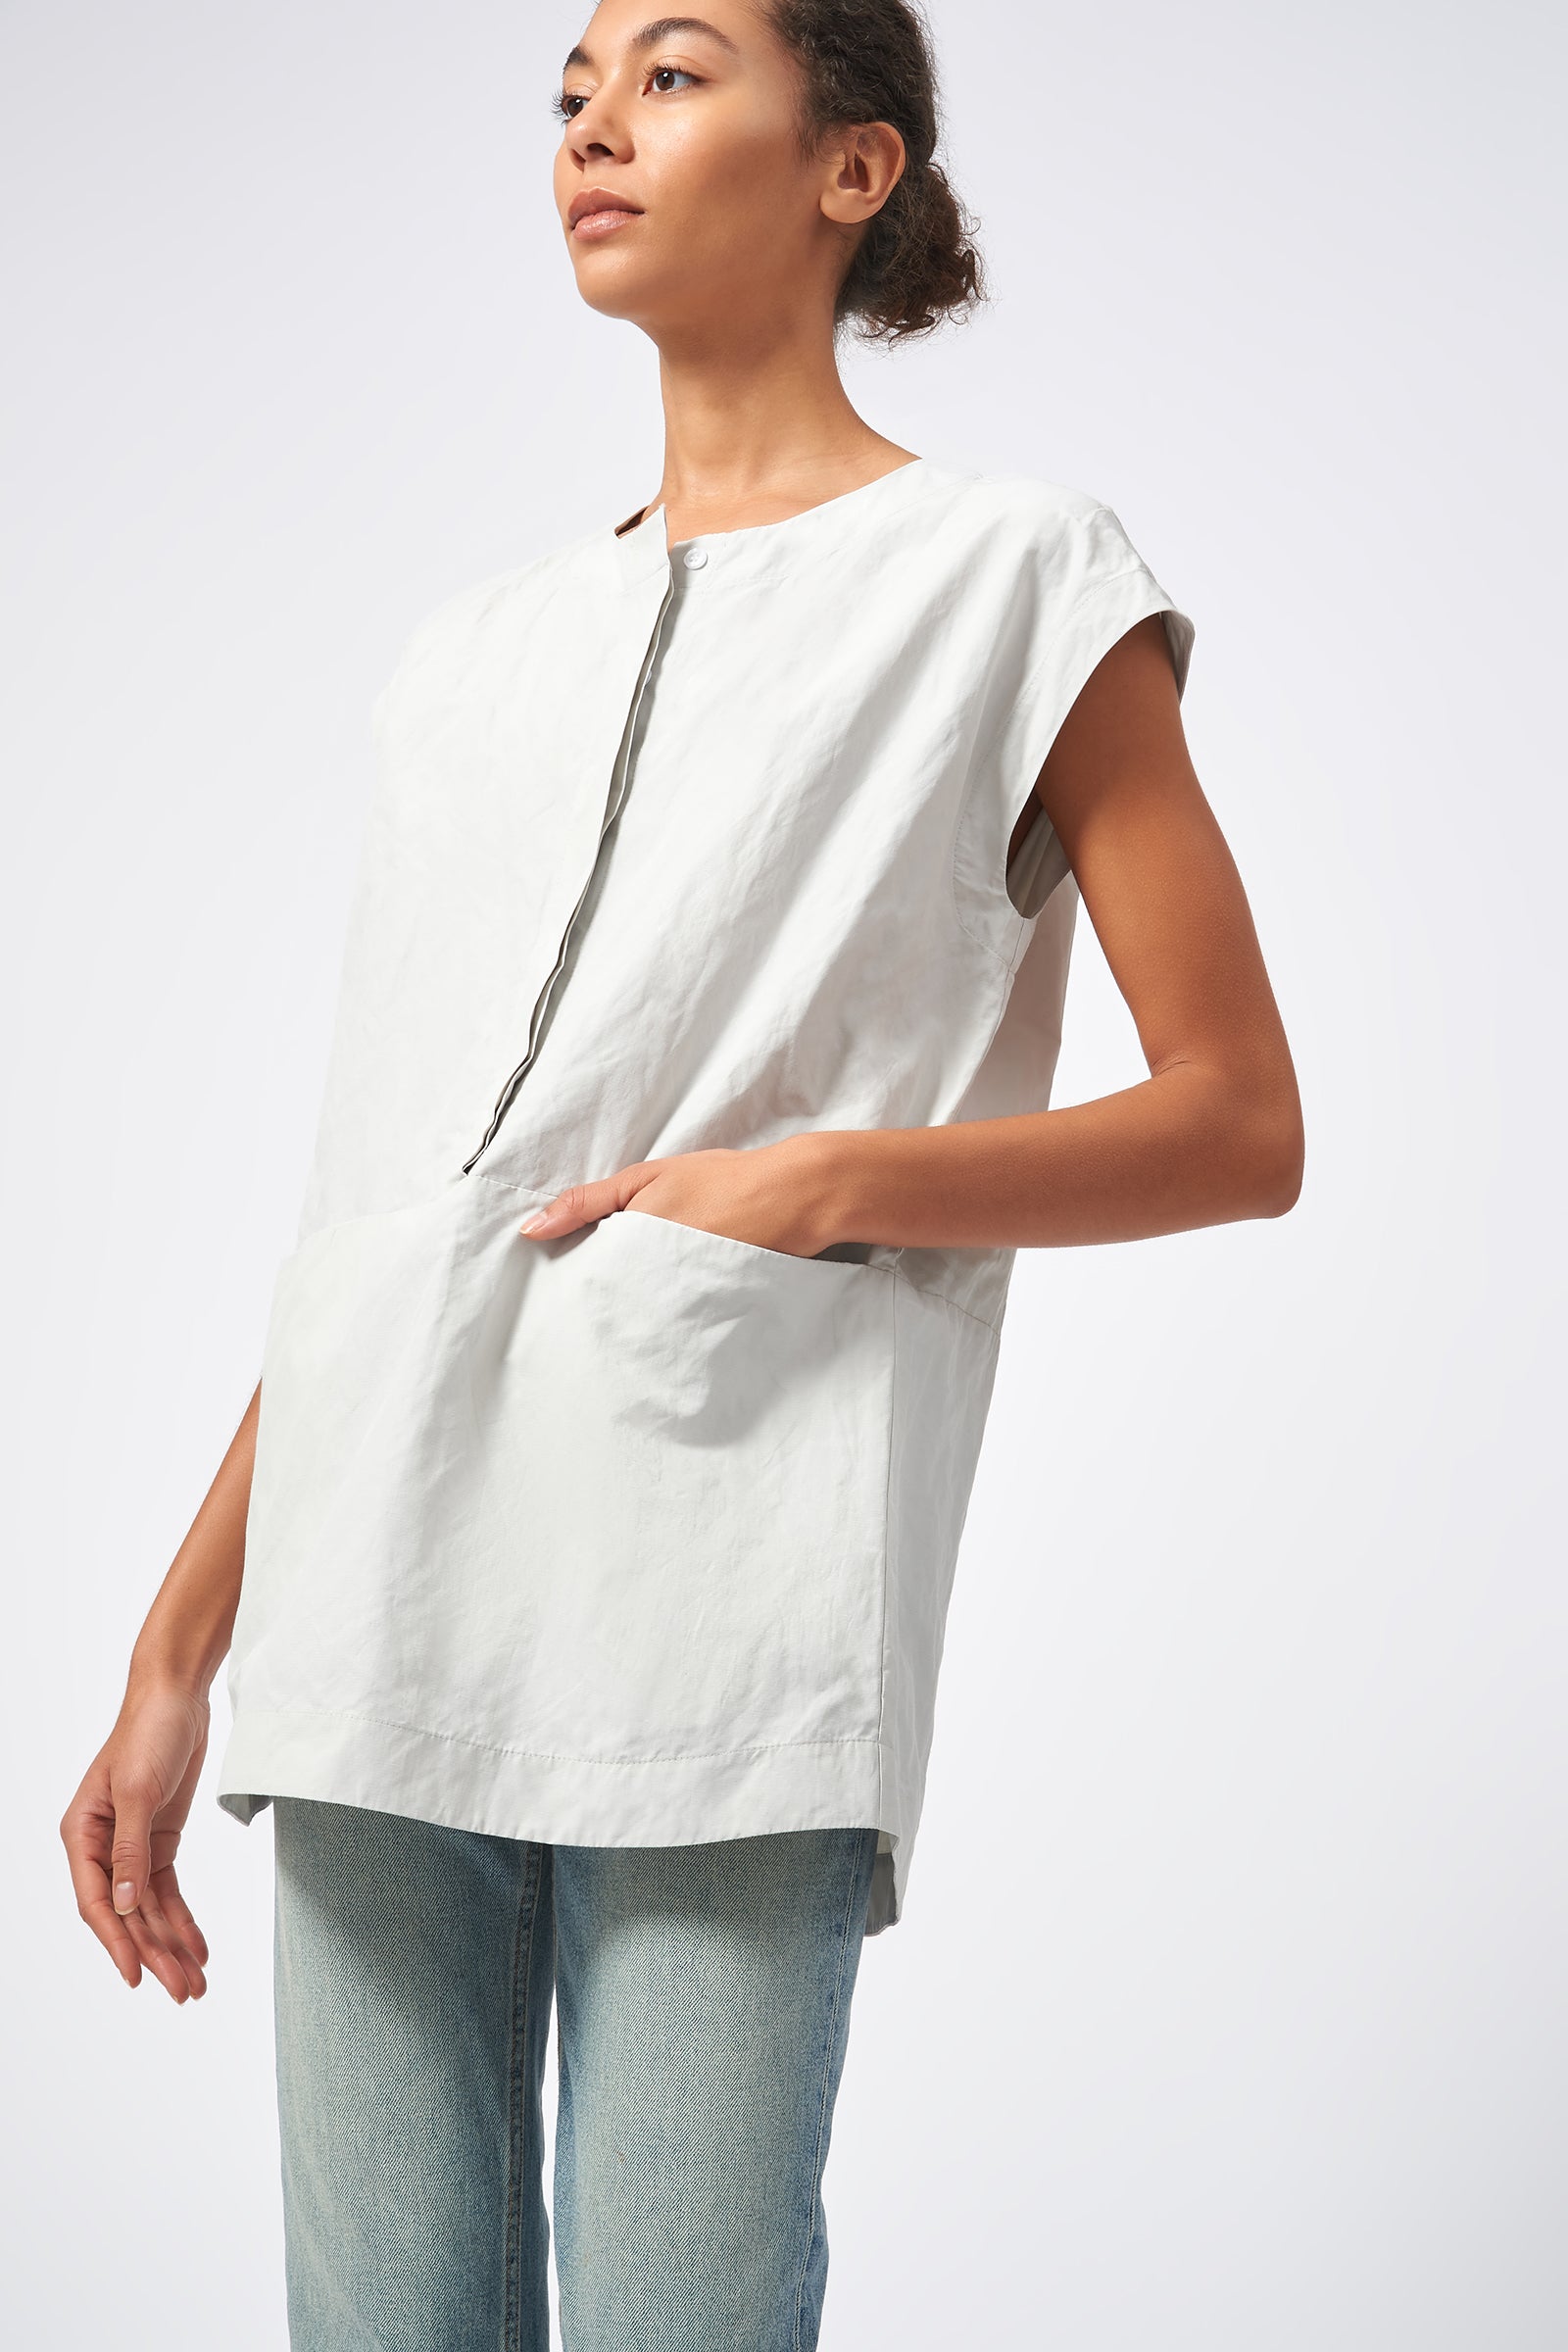 Seam Pocket Tunic in Stone Cotton Nylon – KAL RIEMAN